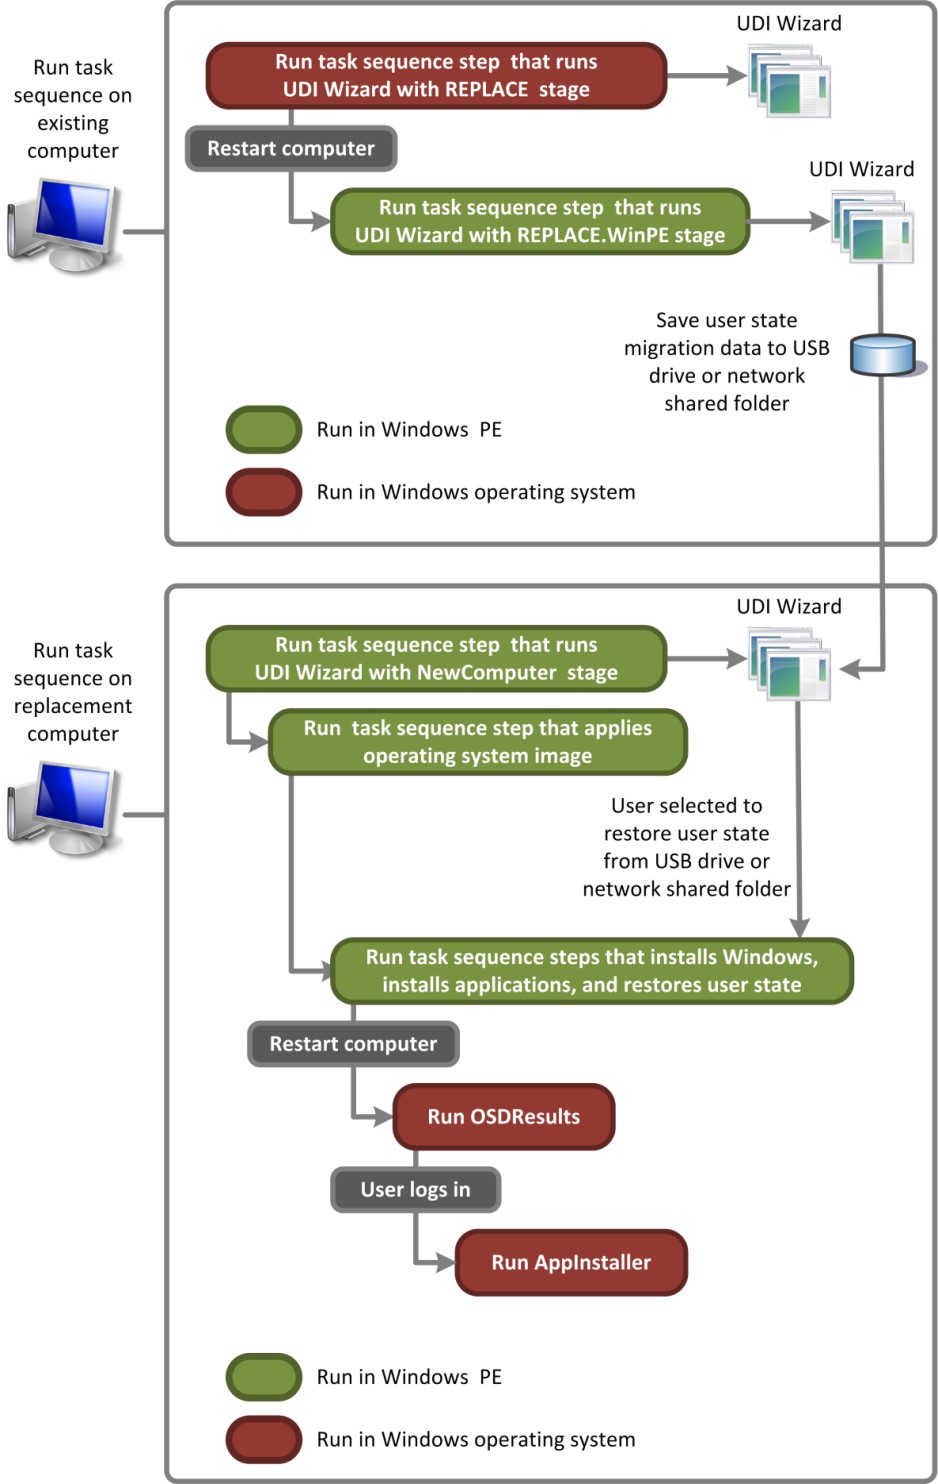 Rysunek 5. Przepływ procesu dla UDI wykonujący scenariusz wdrażania zastąp komputer